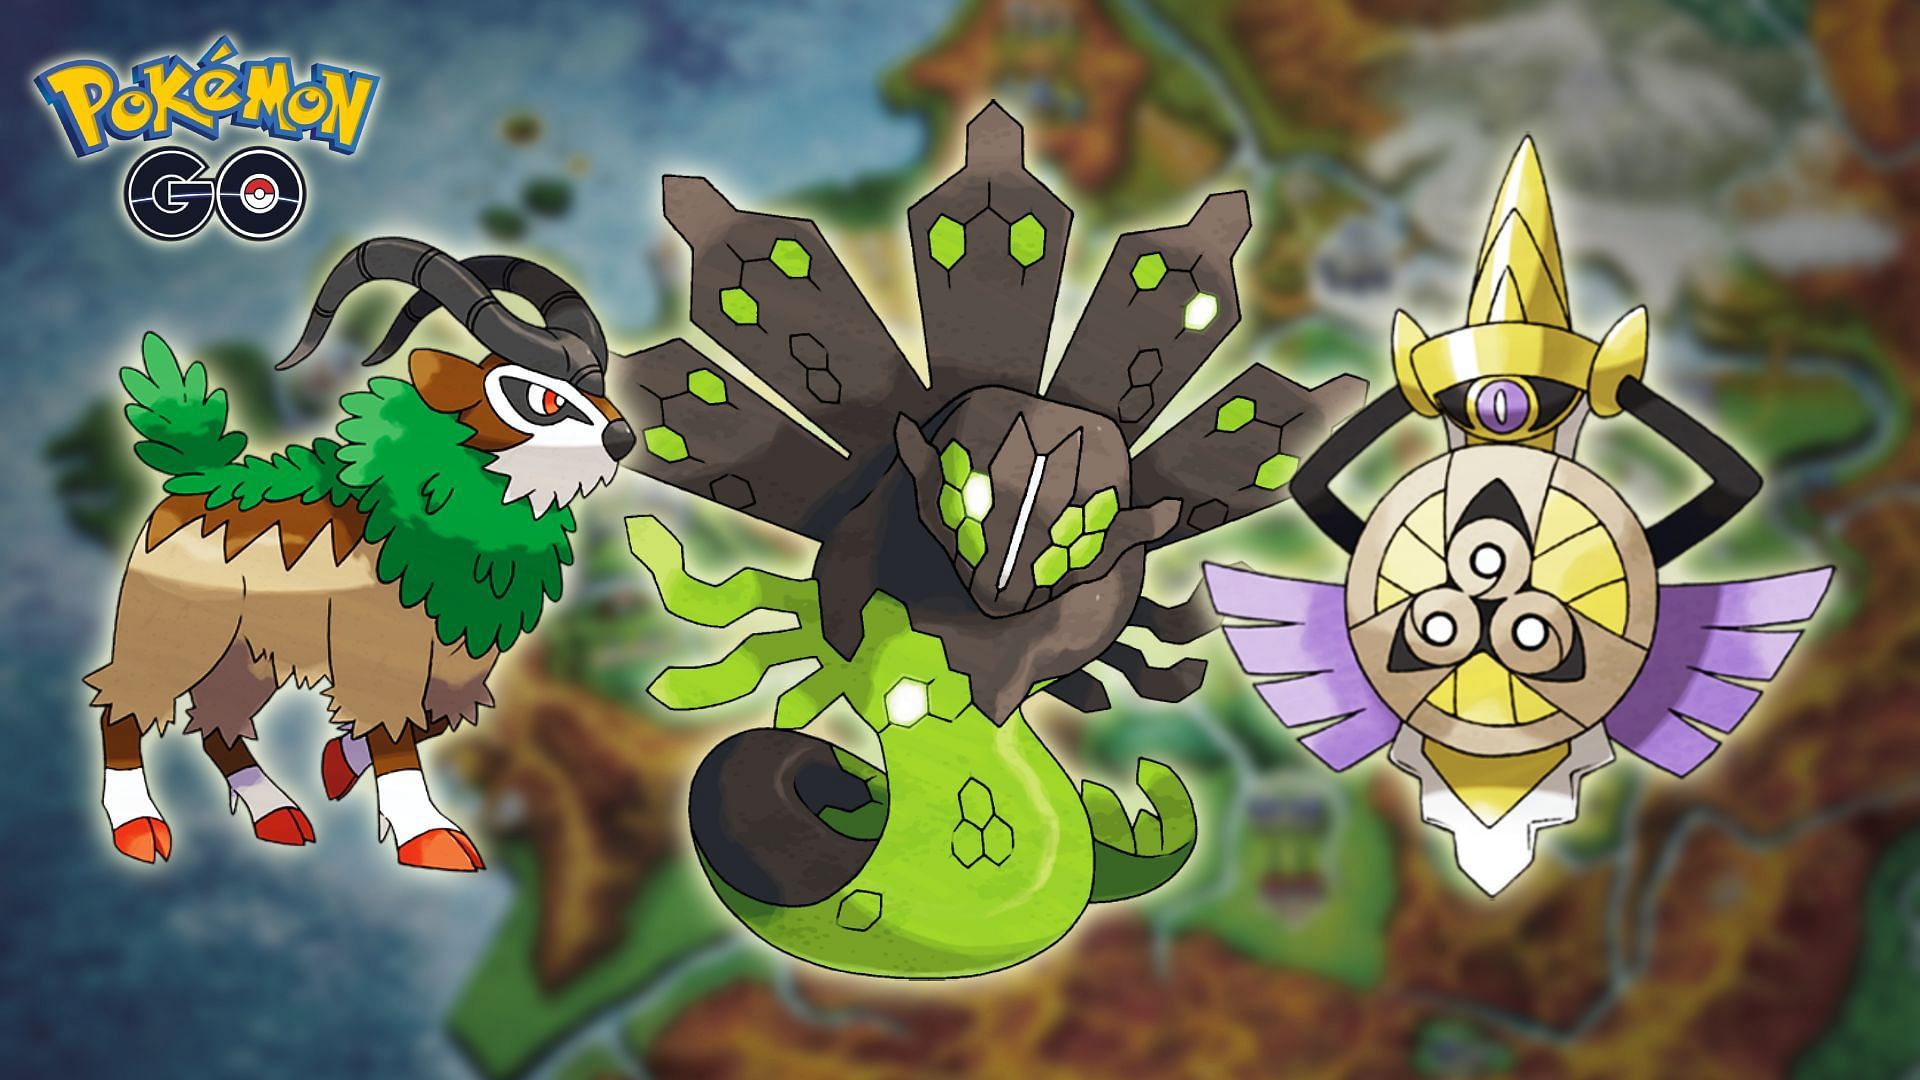 Missing pocket monsters from Kalos in Pokemon GO (Image via Sportskeeda)